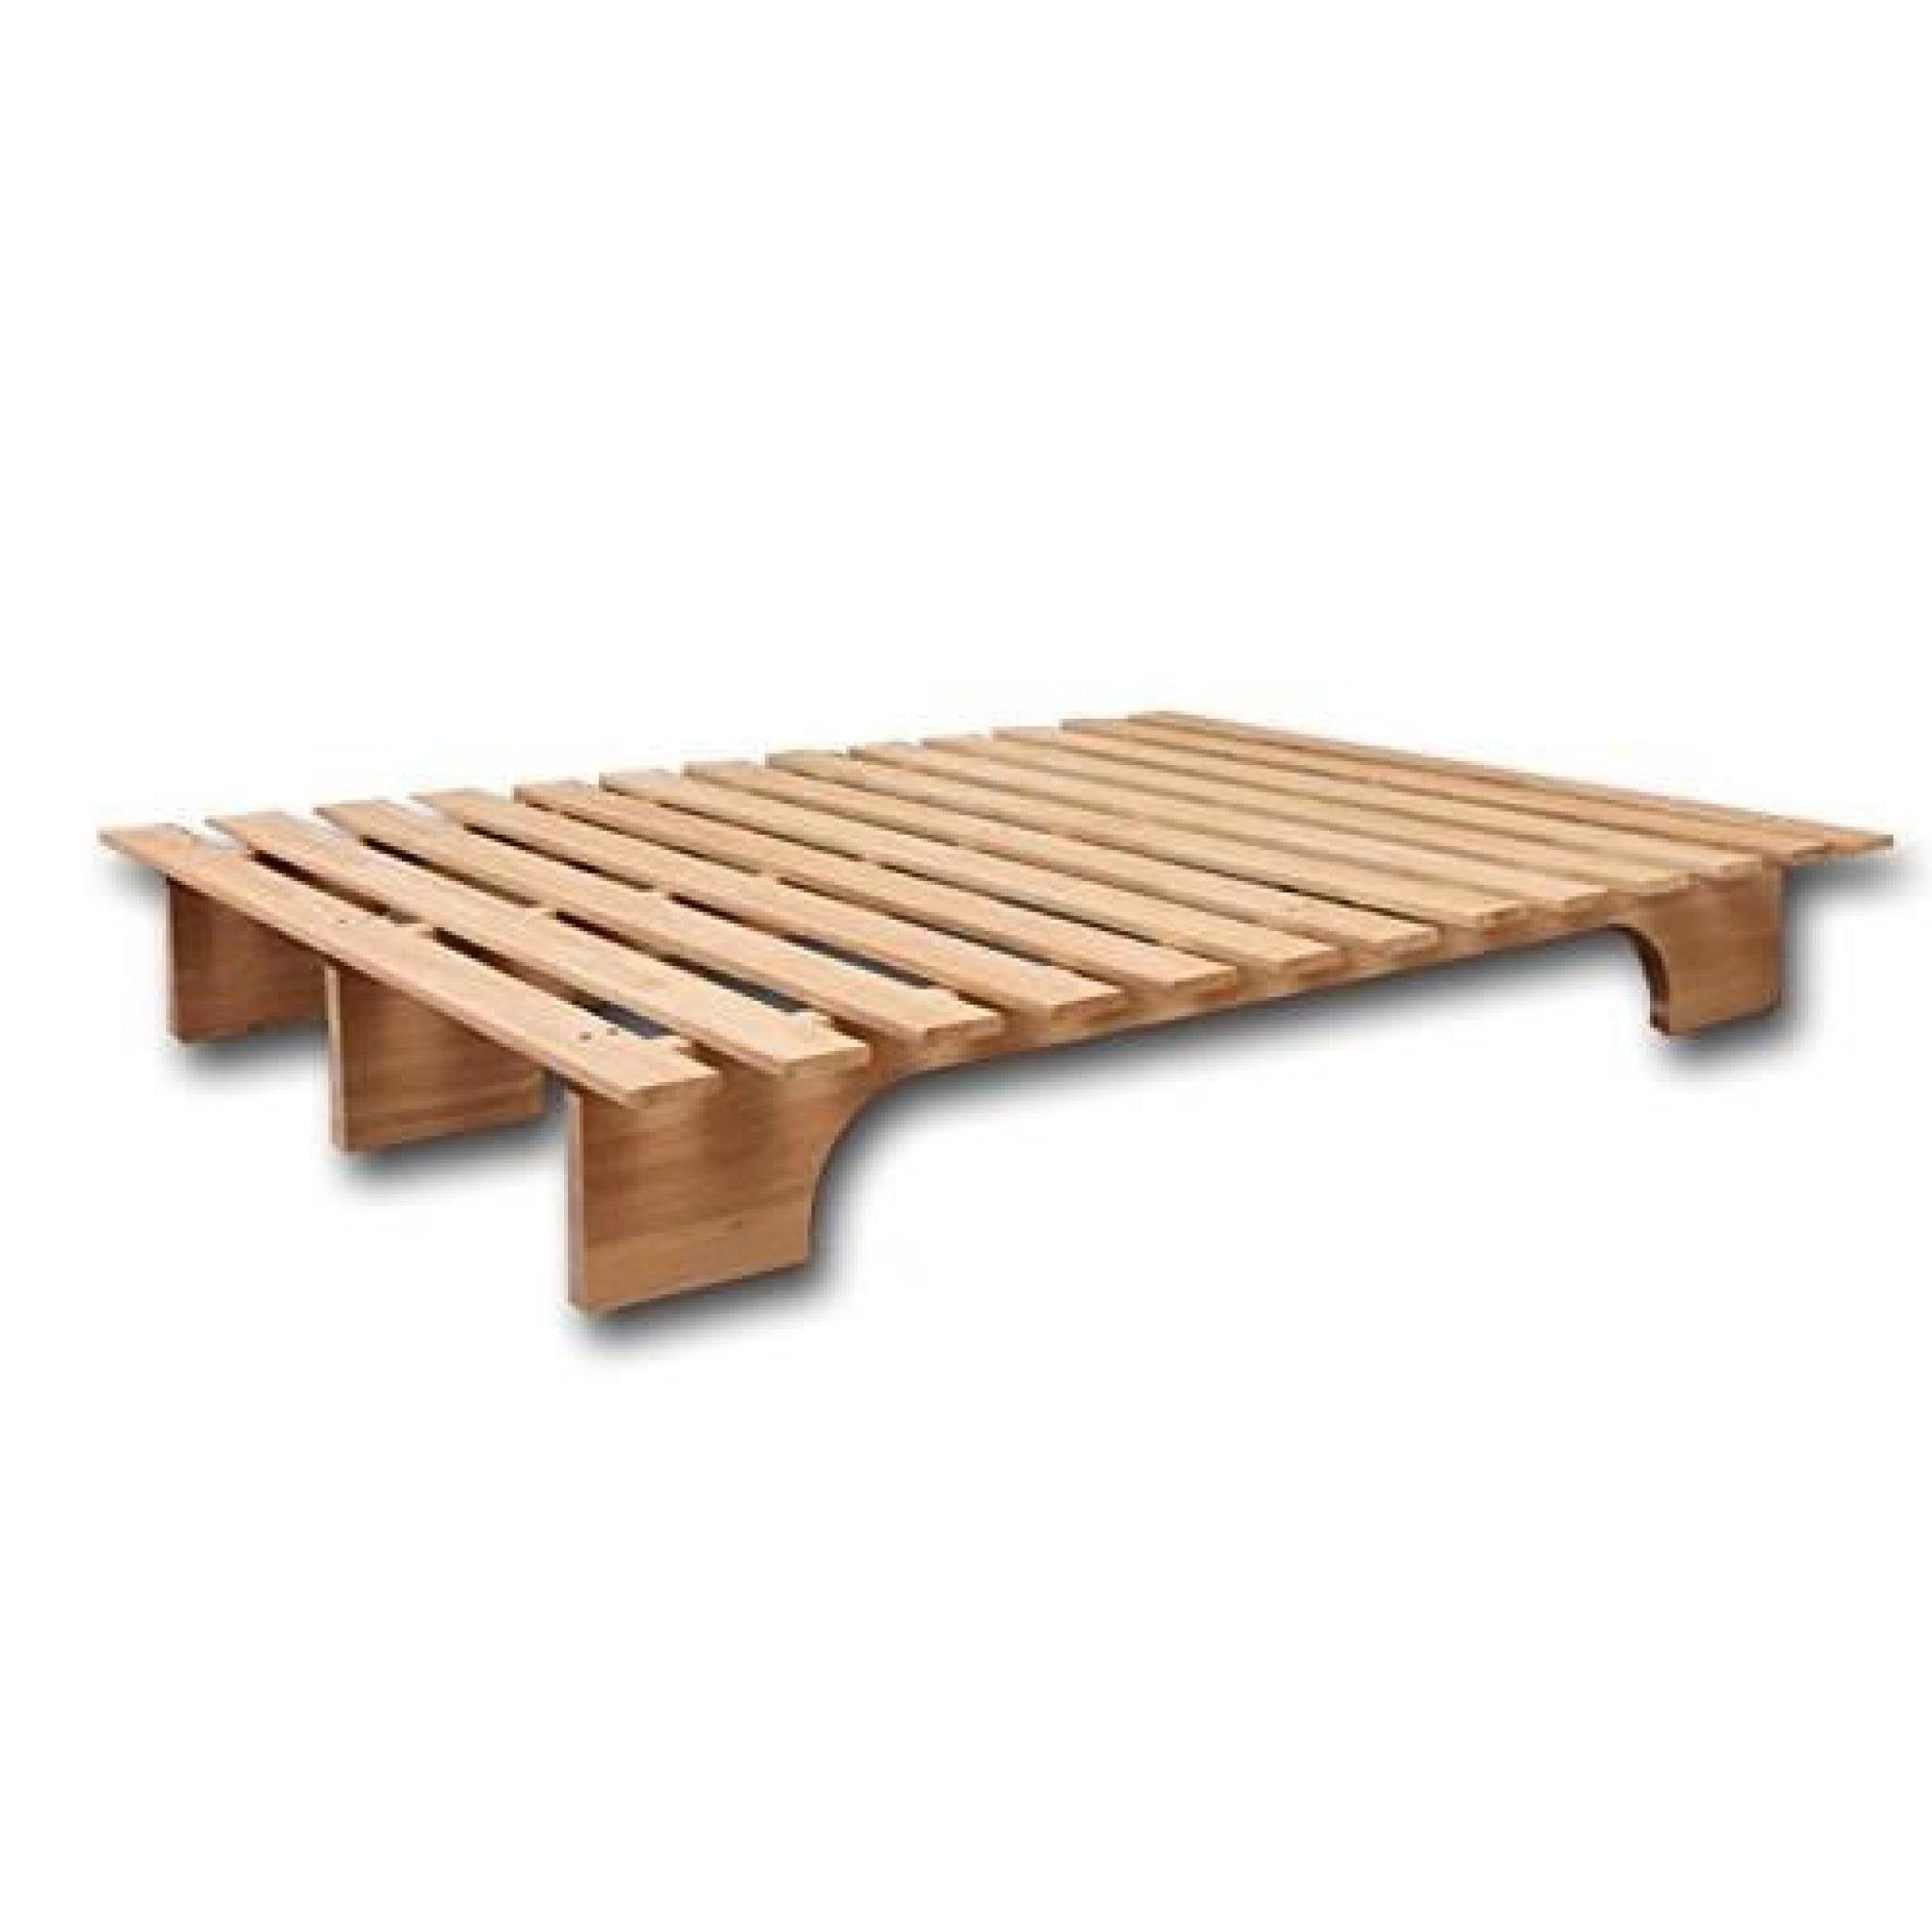 Lit Modèle Éco-bed fabriqué en bois massif d’Hévéa, écologique, prix imbattable. Idéal pour utiliser avec futon en coton ou latex... pas cher